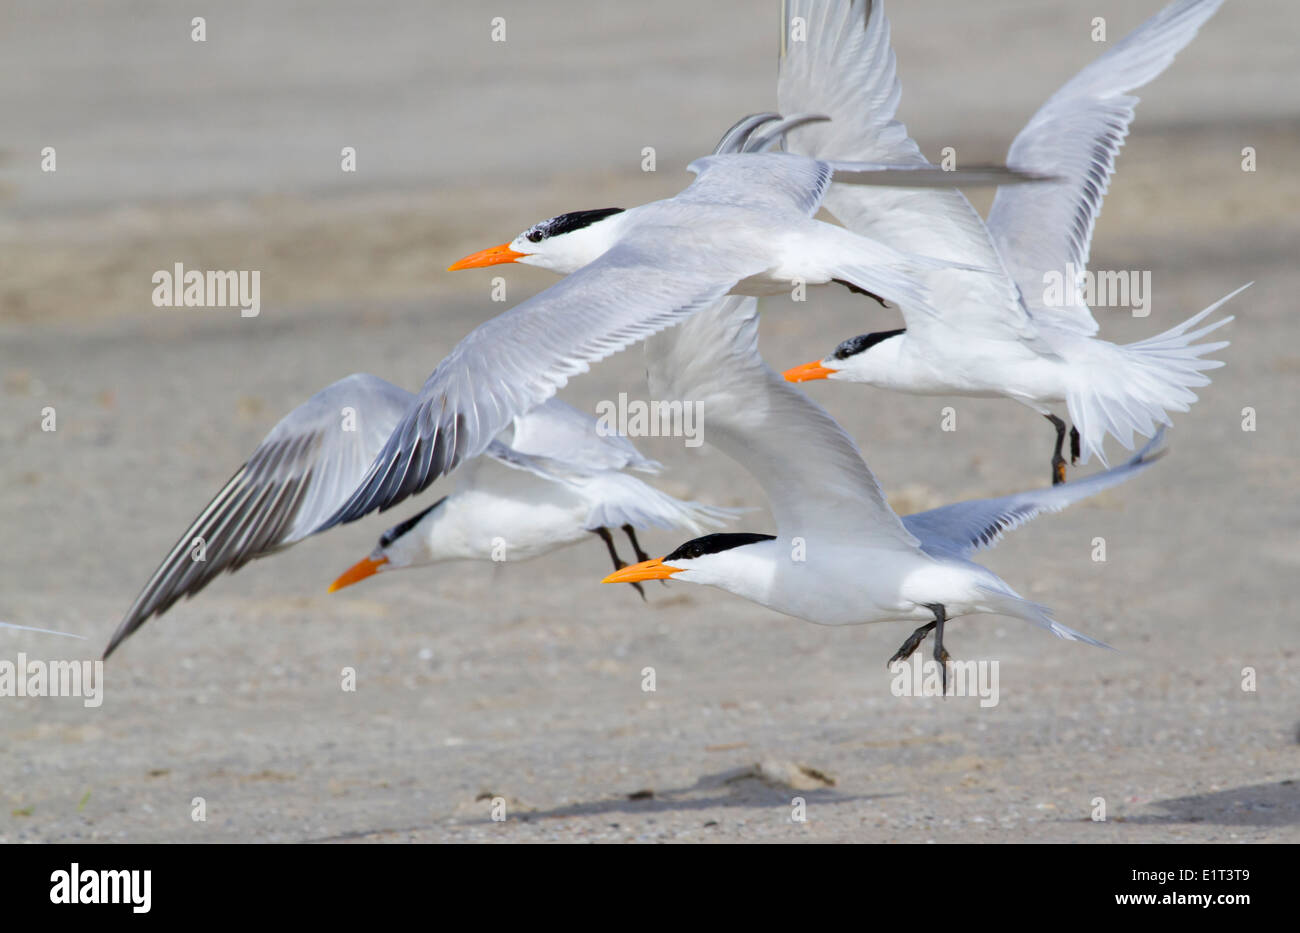 A group of royal terns (Thalasseus maximus) on the coast of Galveston, Texas, USA Stock Photo